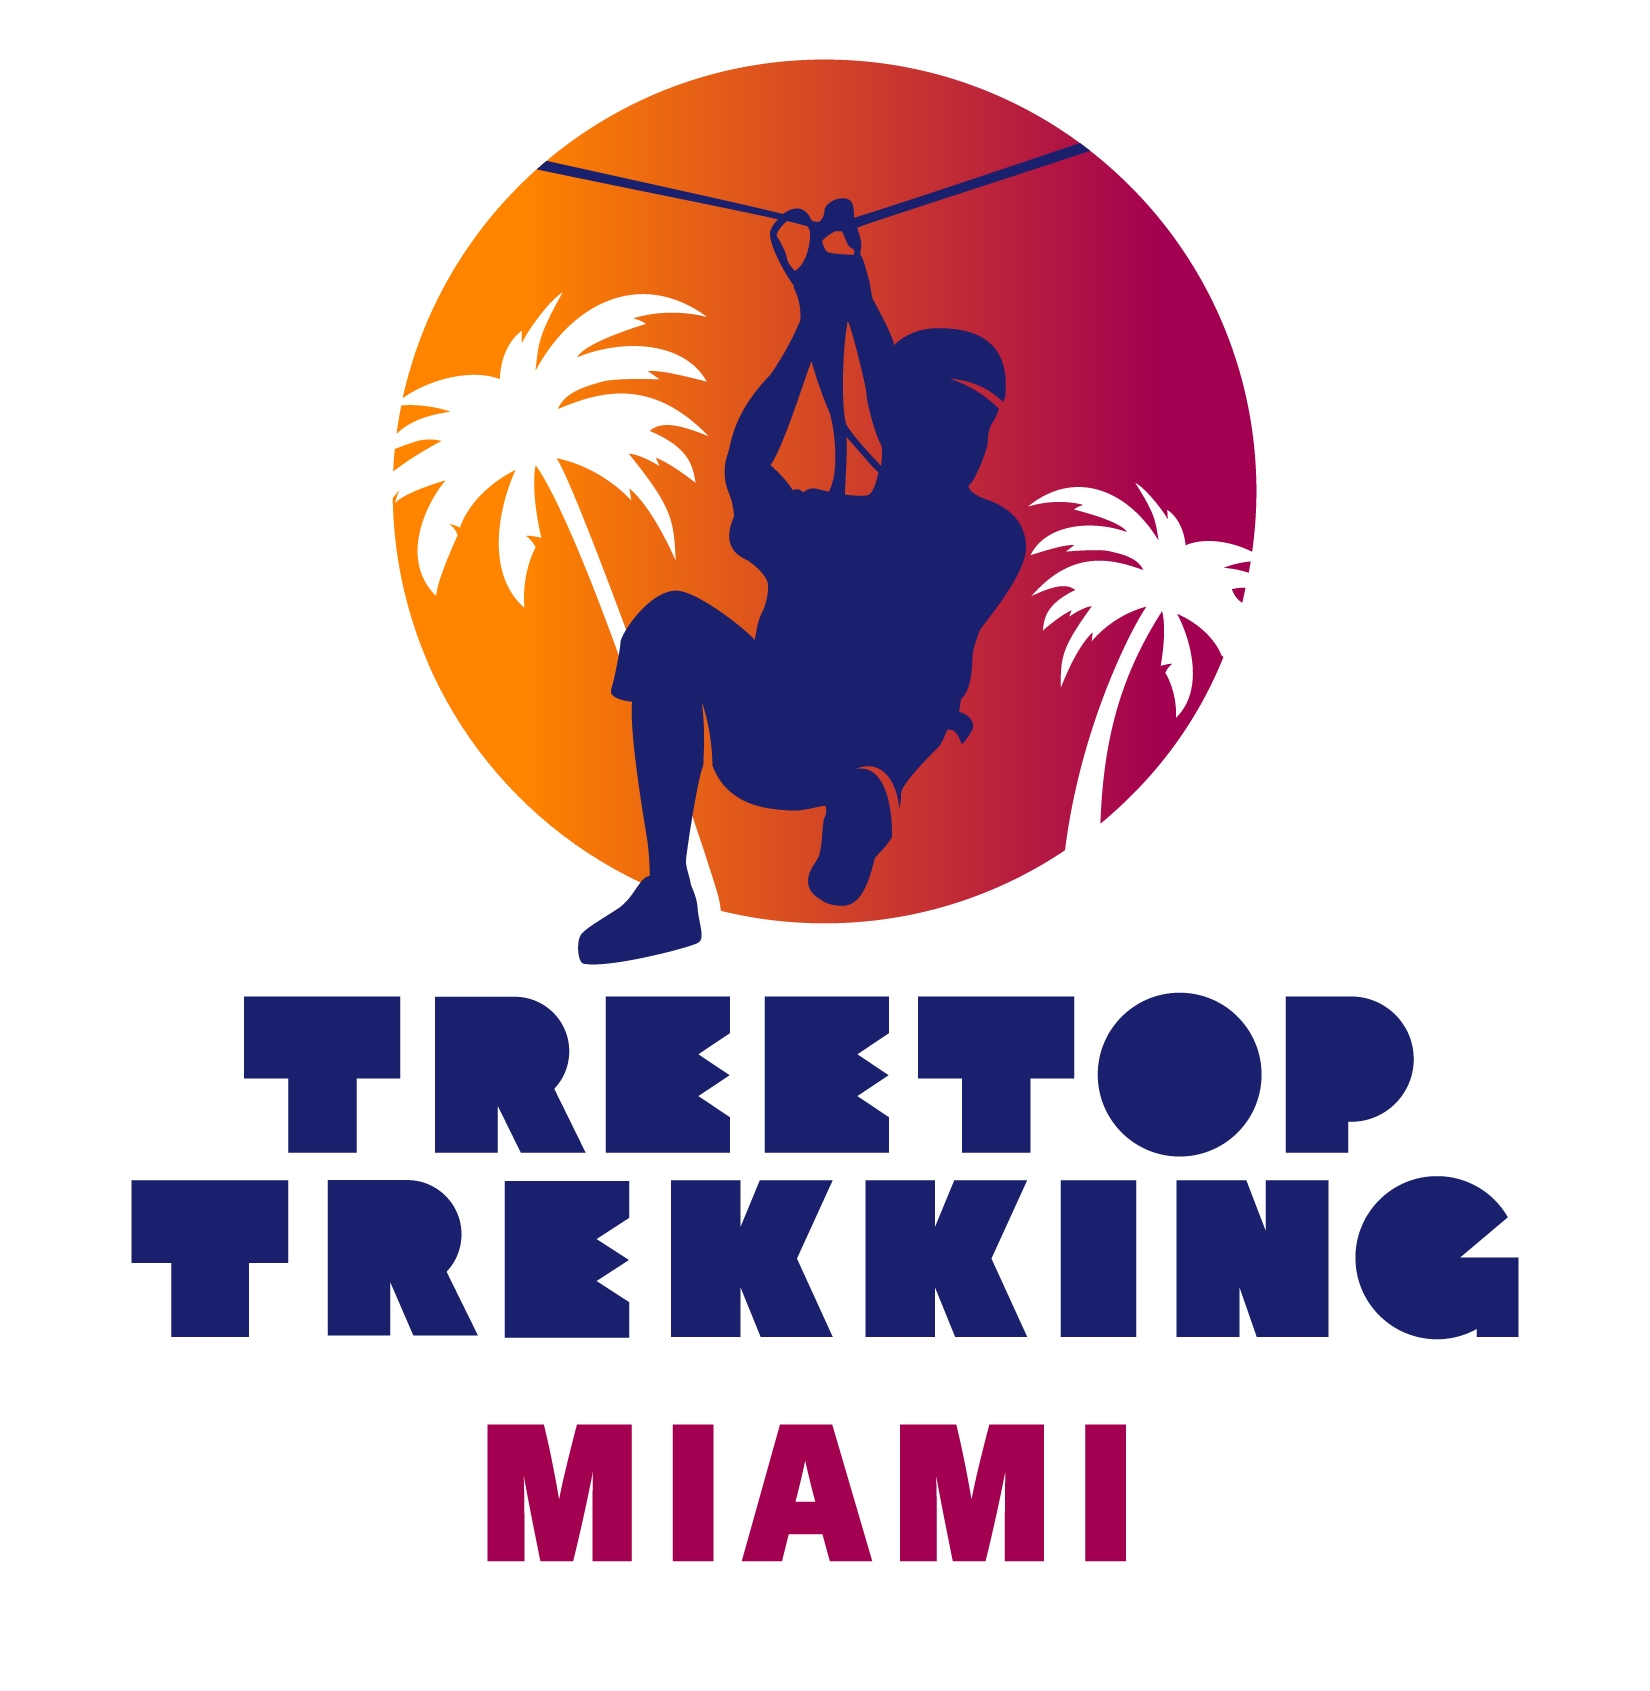 Treetop Trekking Miami|Theme Park|Entertainment